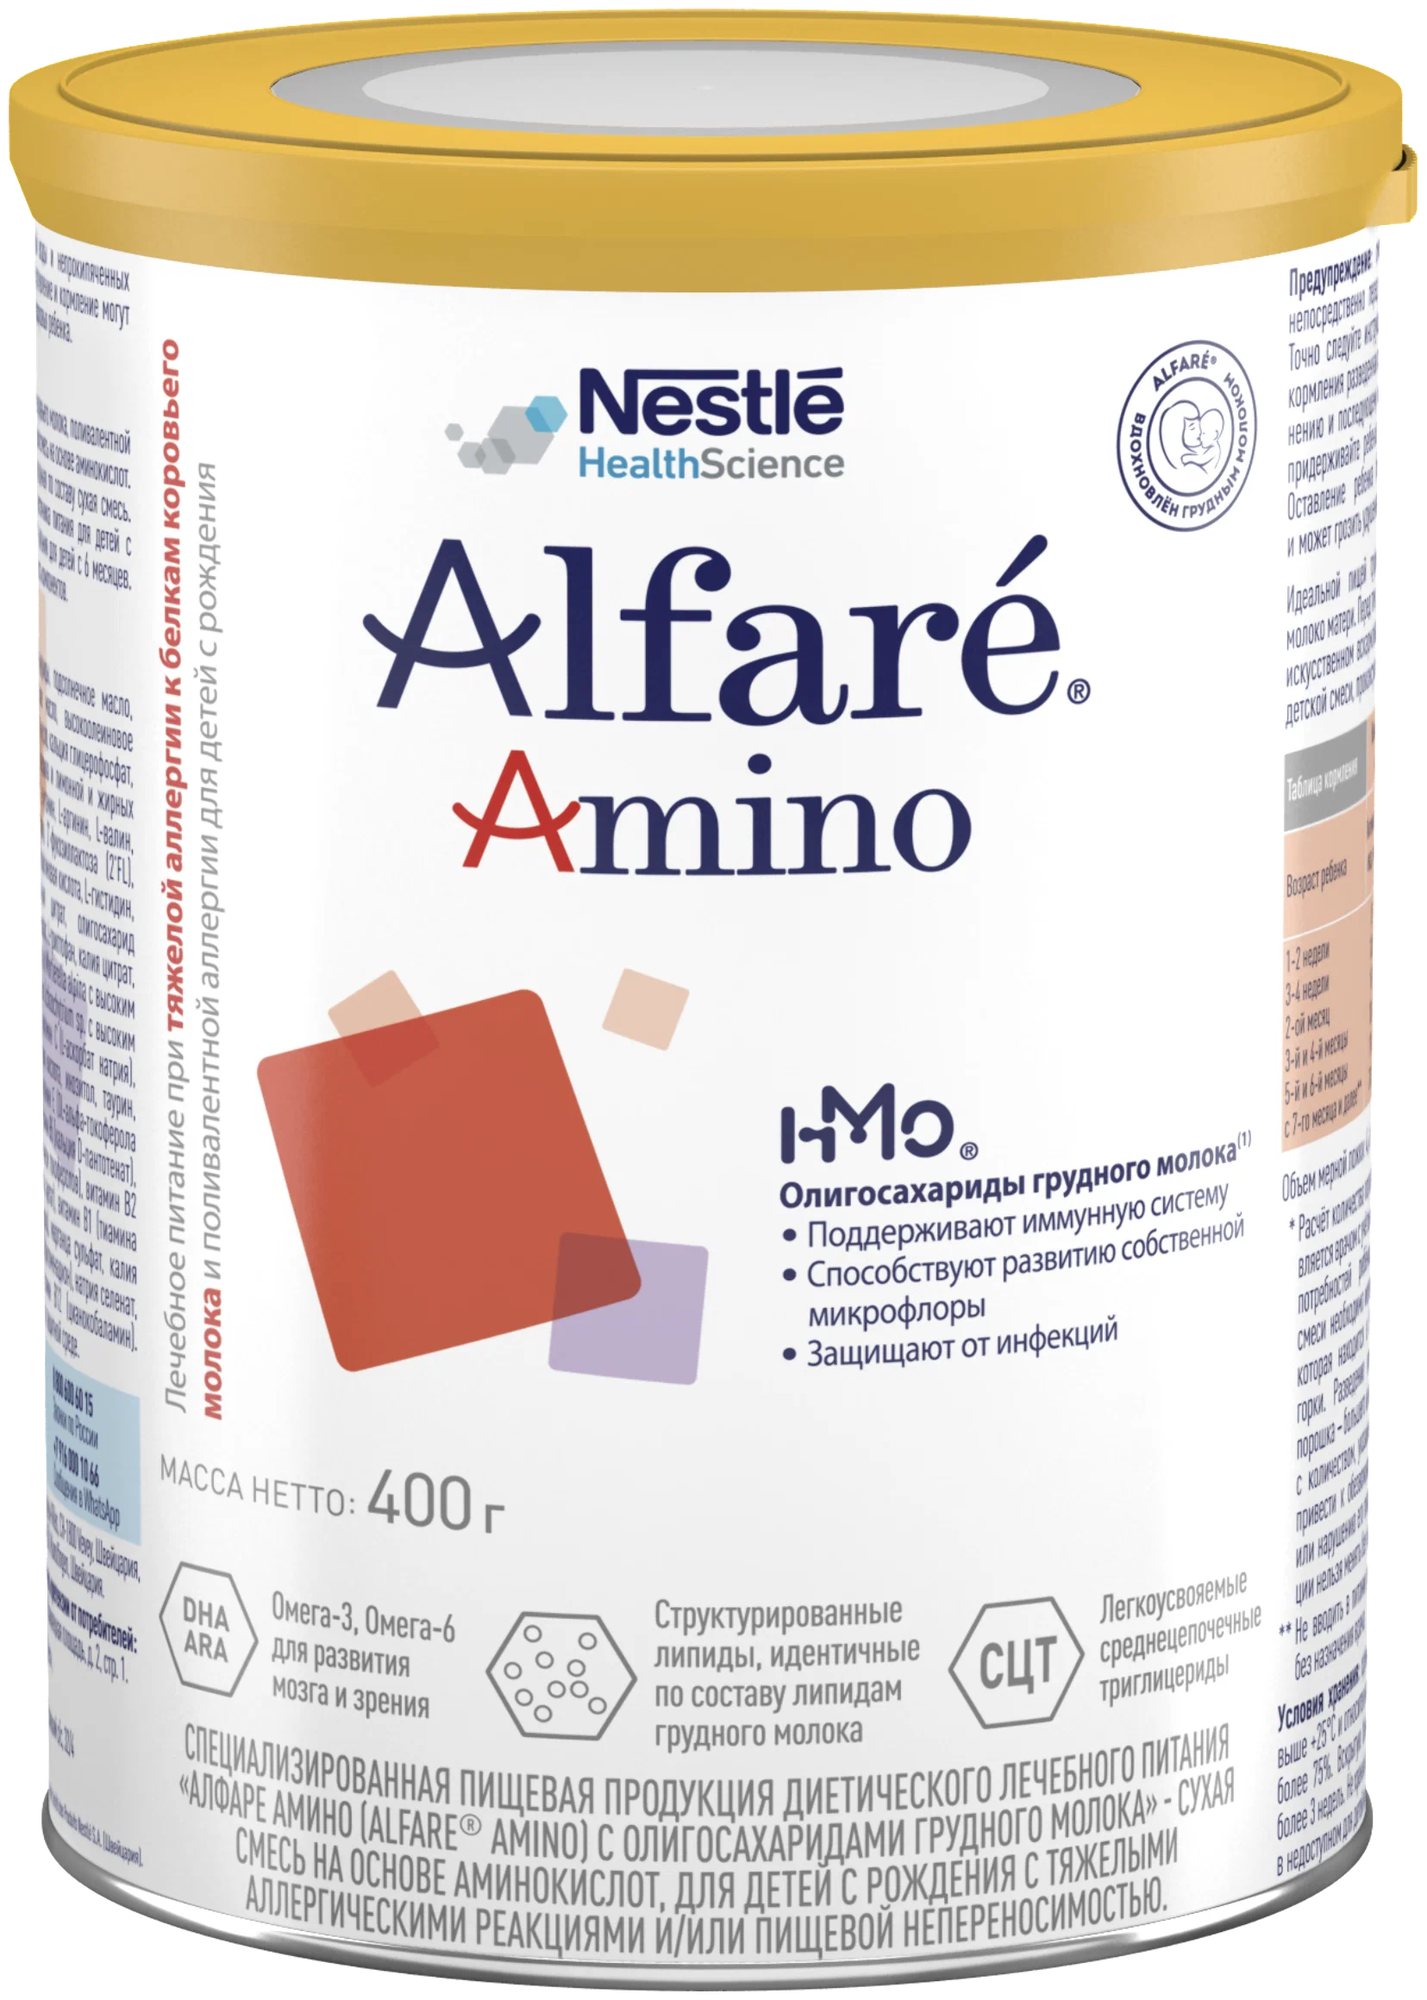 Смесь Alfare (Nestle) Amino HMO, с рождения, 400 г